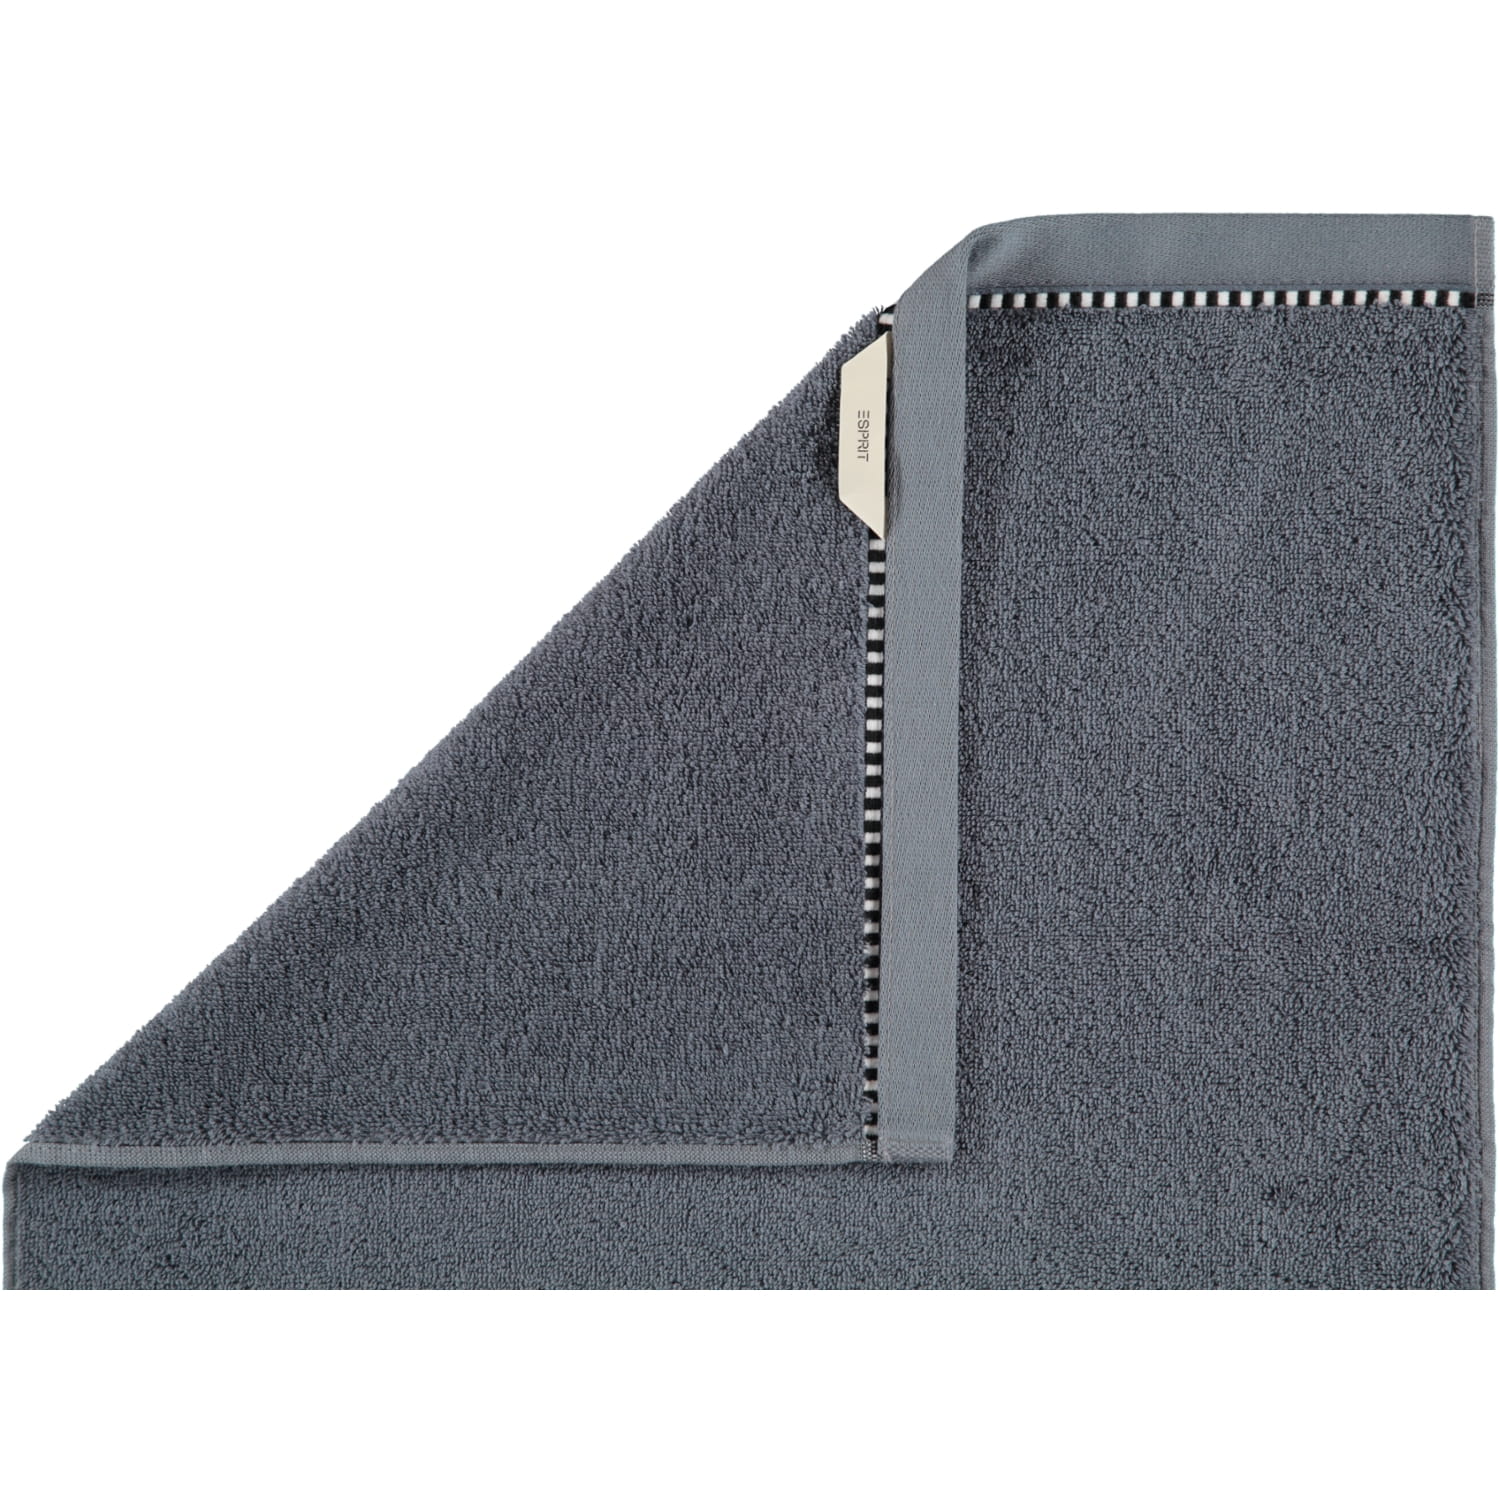 steel | grey | 740 - Box | ESPRIT ESPRIT Farbe: Esprit Marken Handtücher Solid -